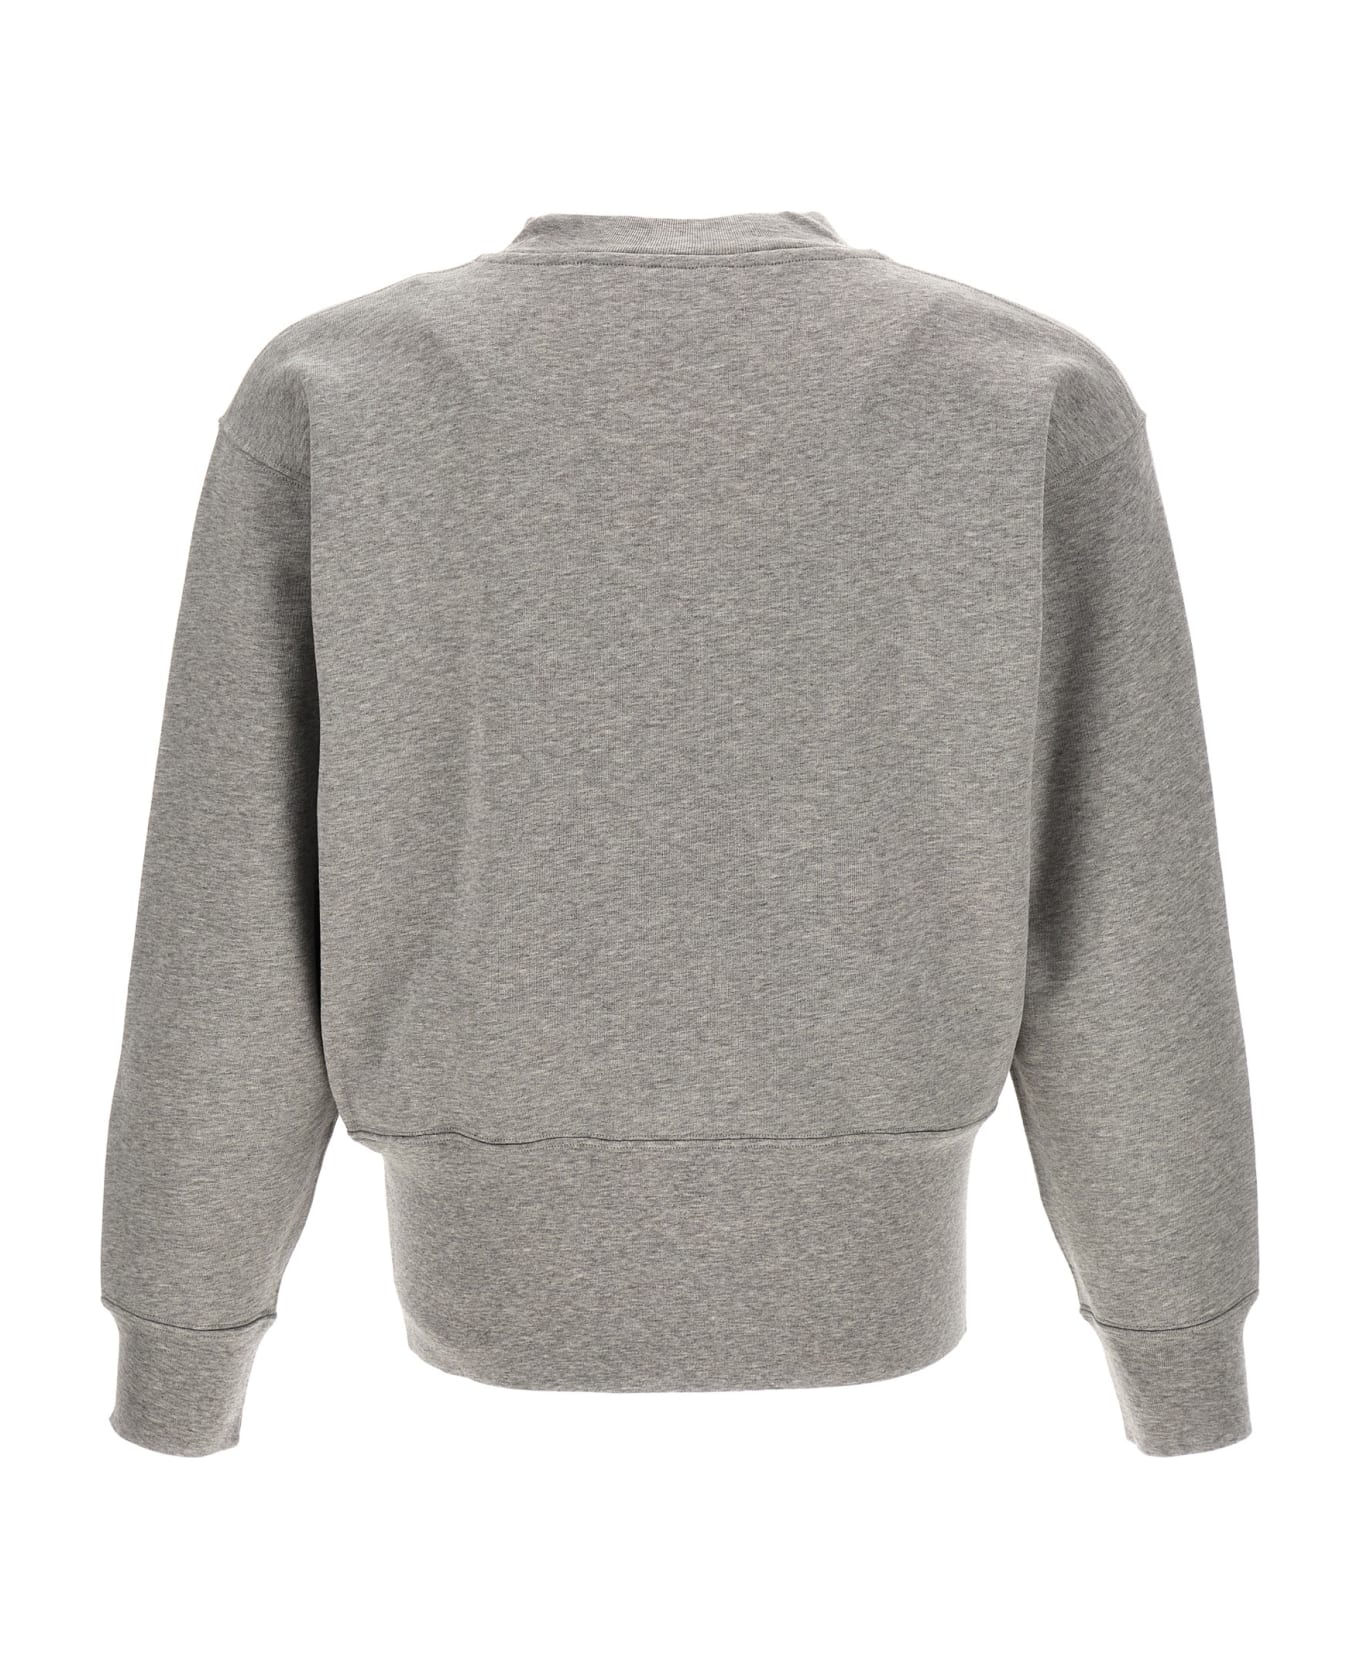 Moncler Genius X Salehe Bembury Sweatshirt - Gray フリース